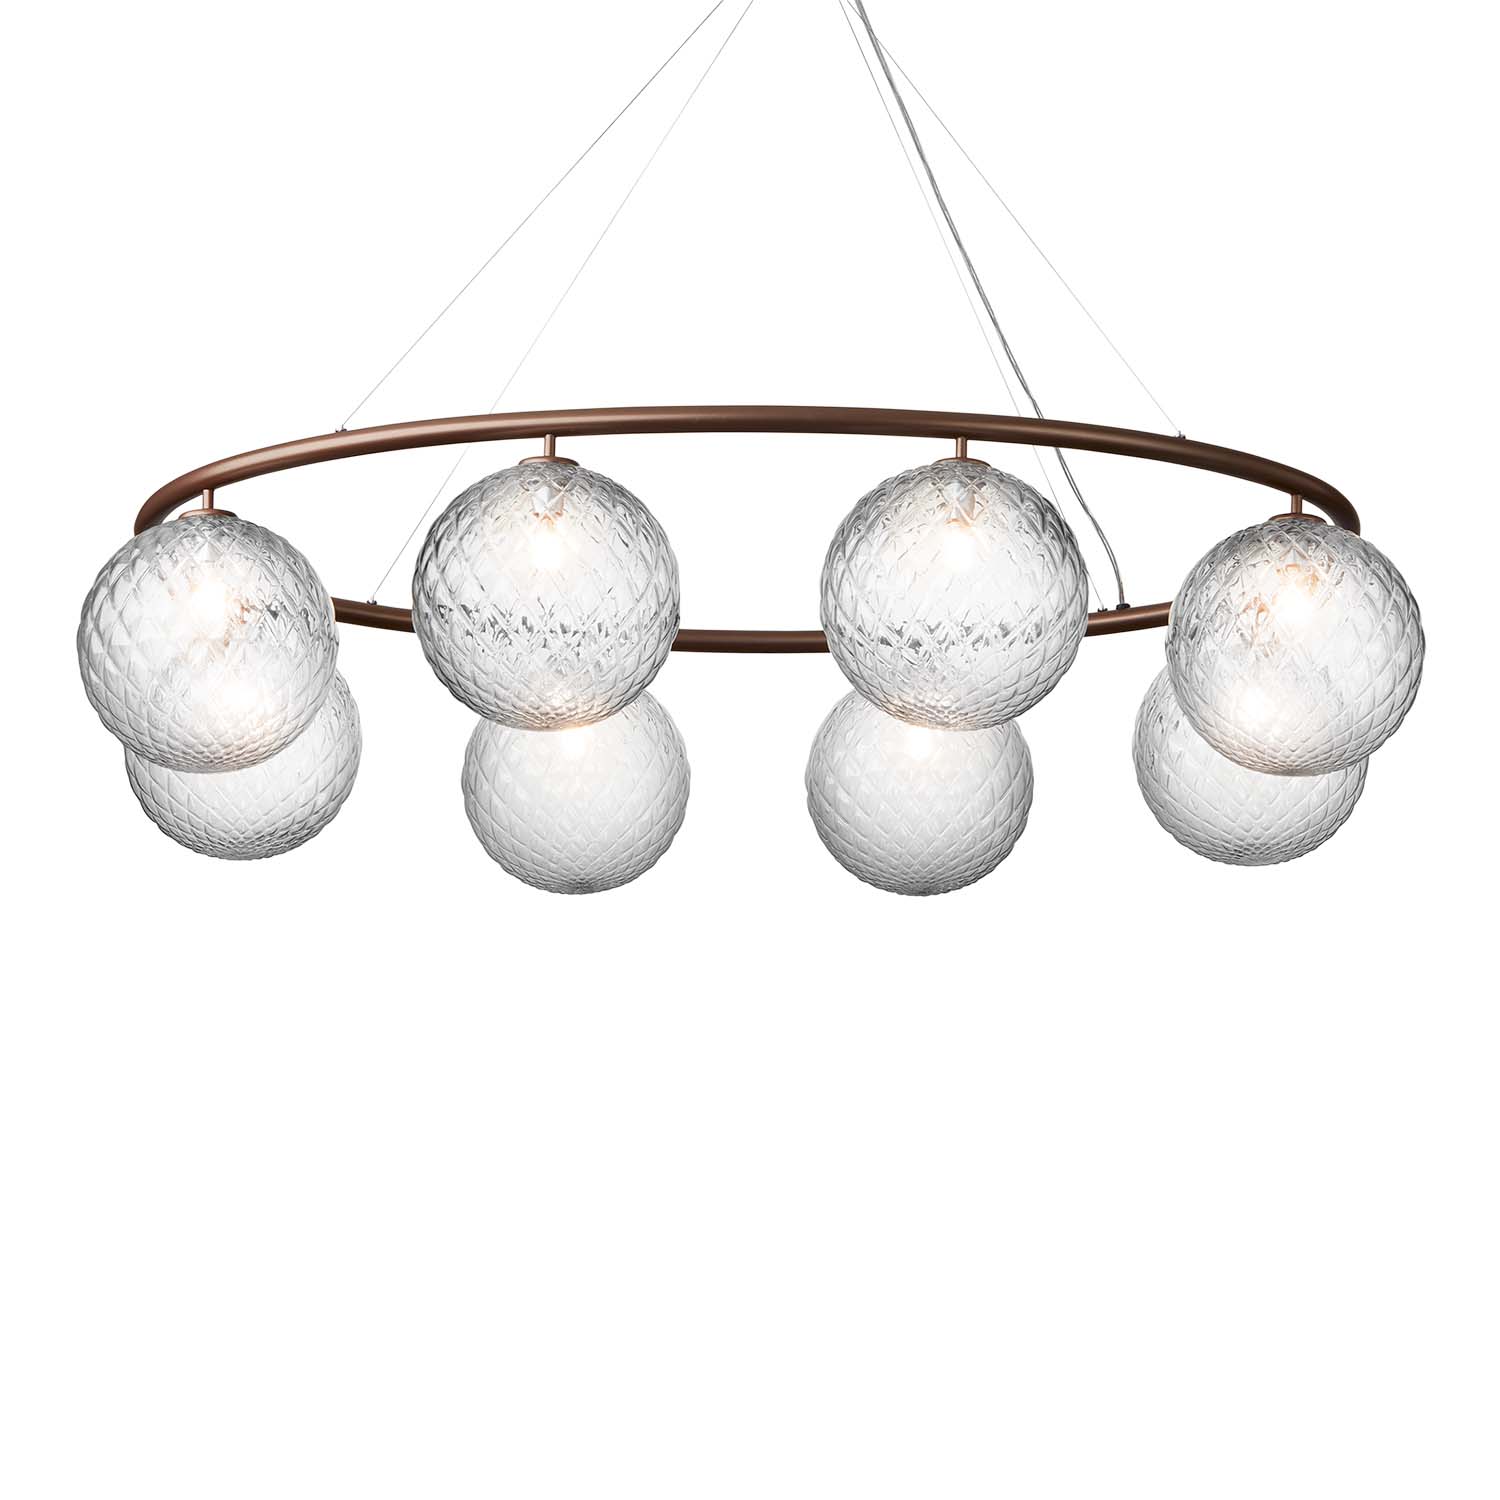 MIIRA Optic Oval – Hochwertige, elegante ovale Pendelleuchte für das Wohnzimmer